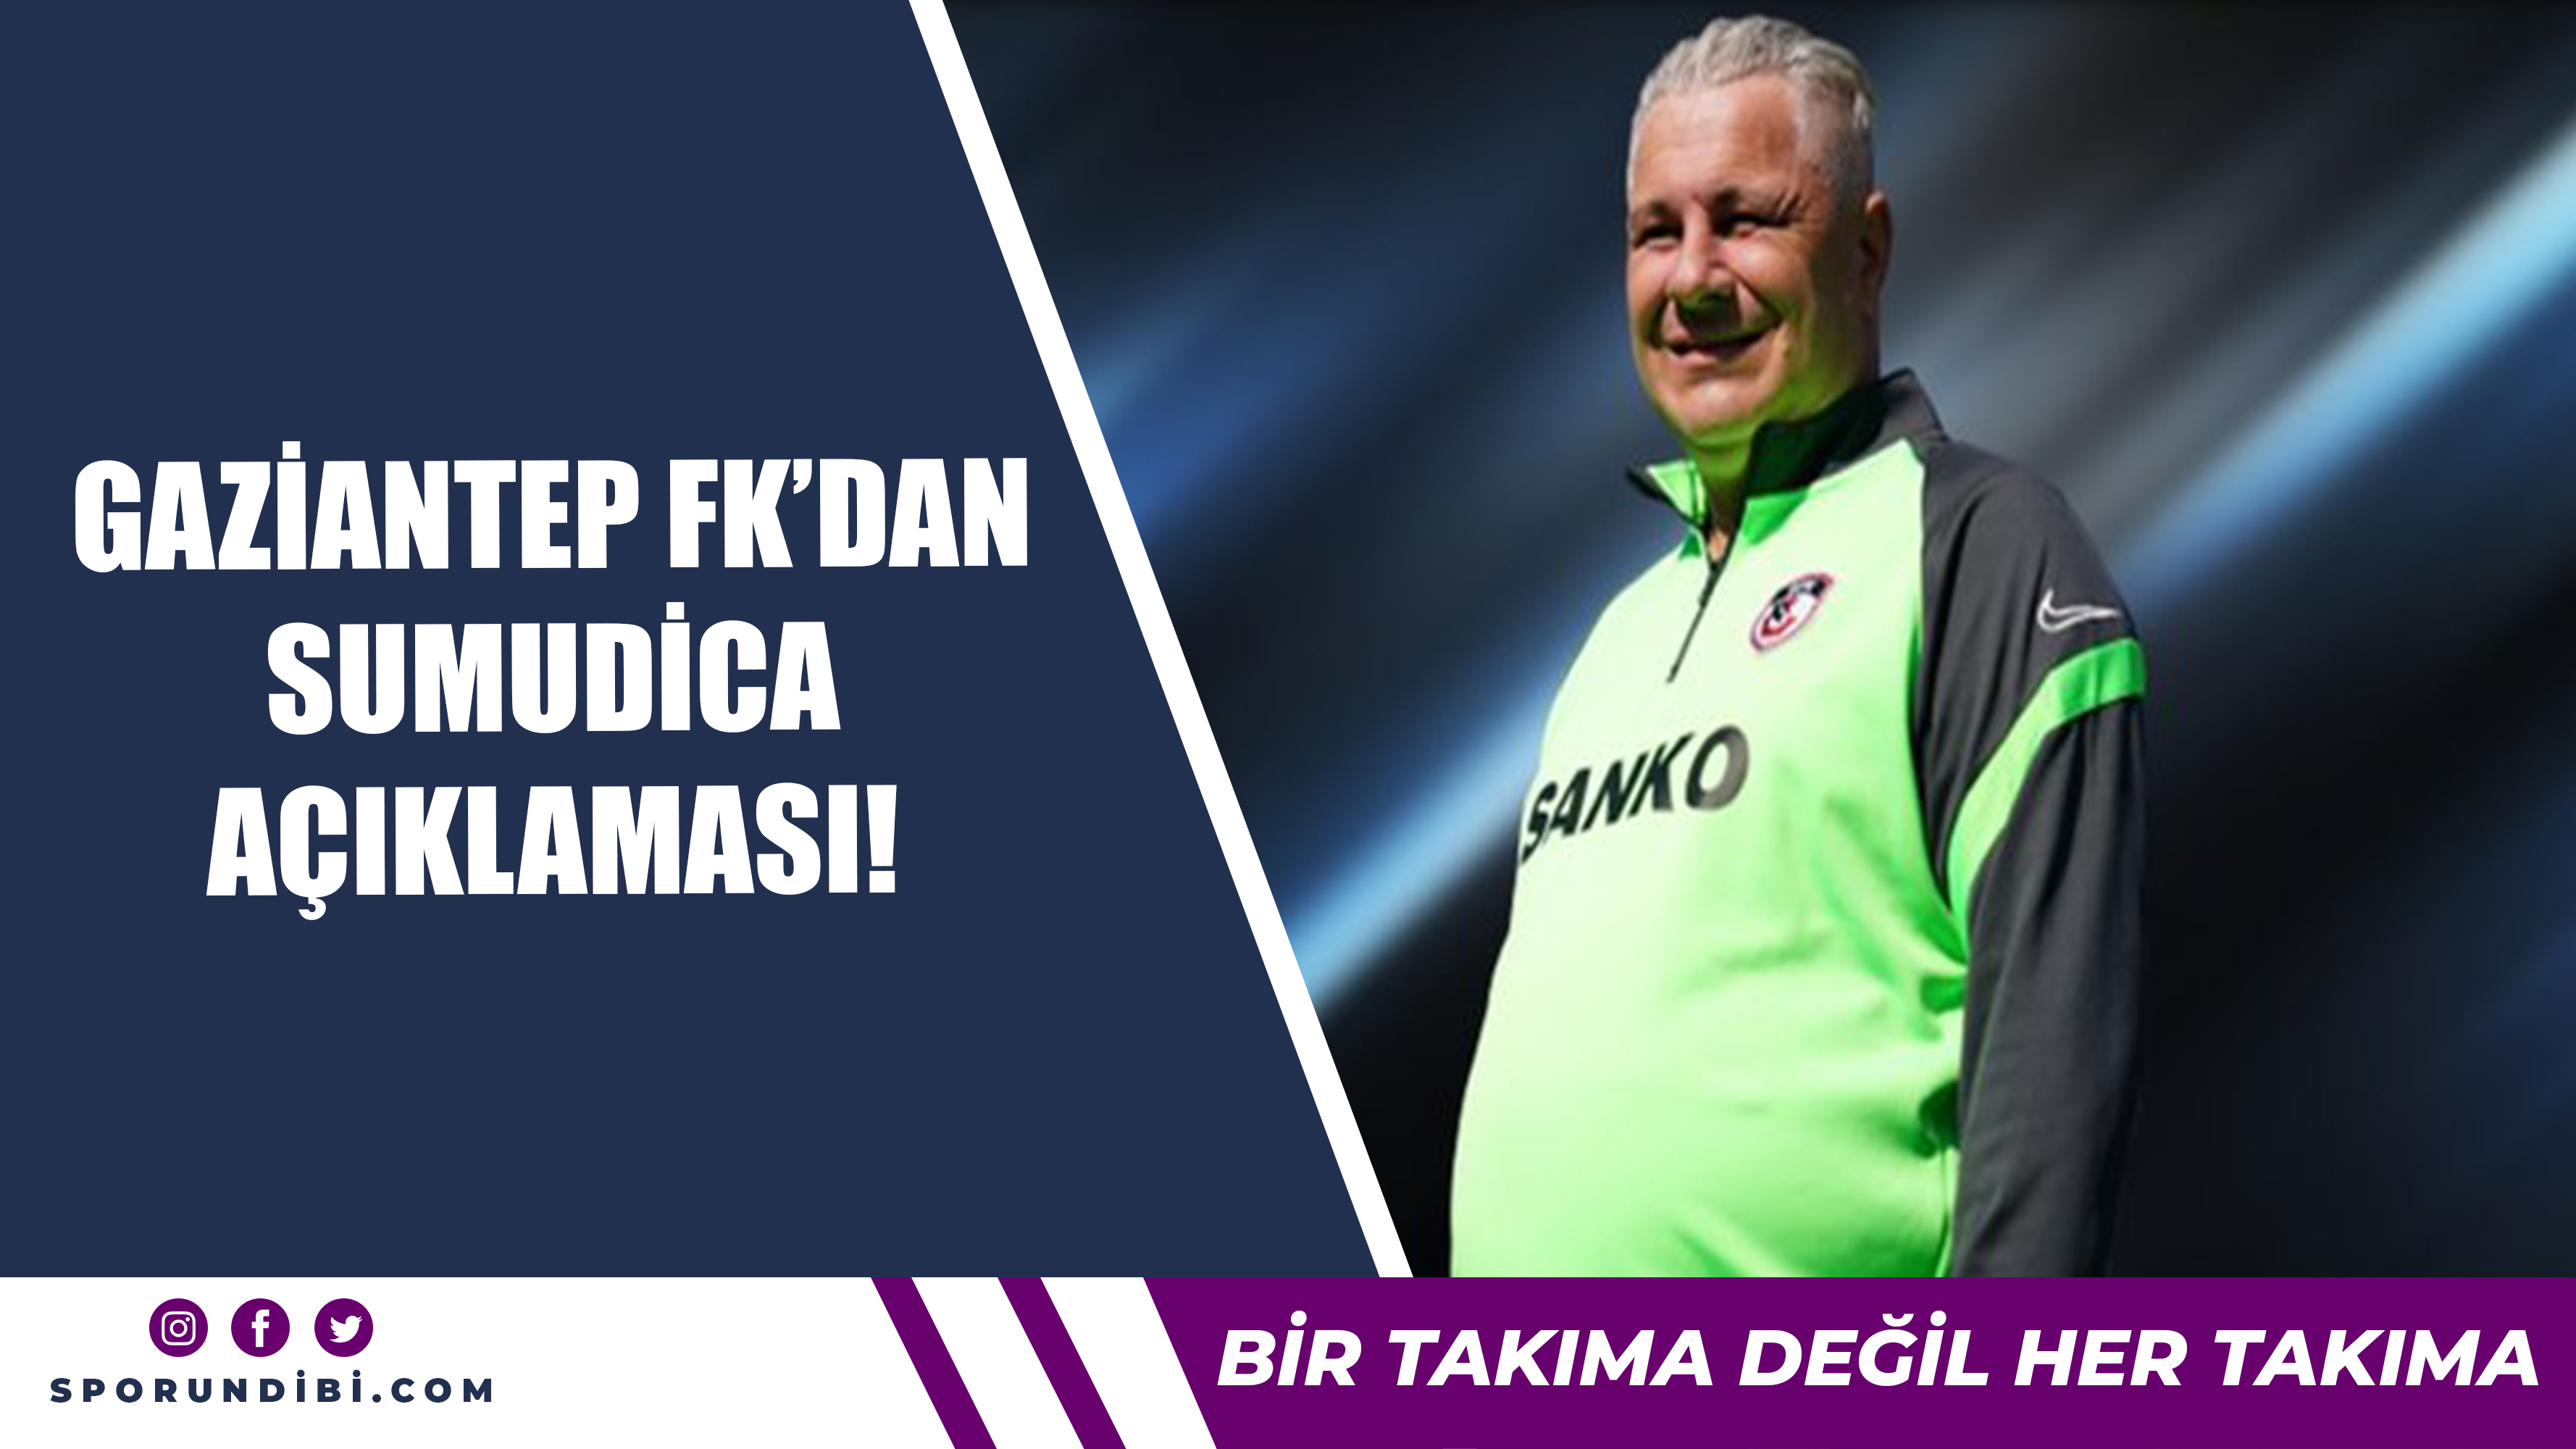 Gaziantep FK'dan Sumudica açıklaması!